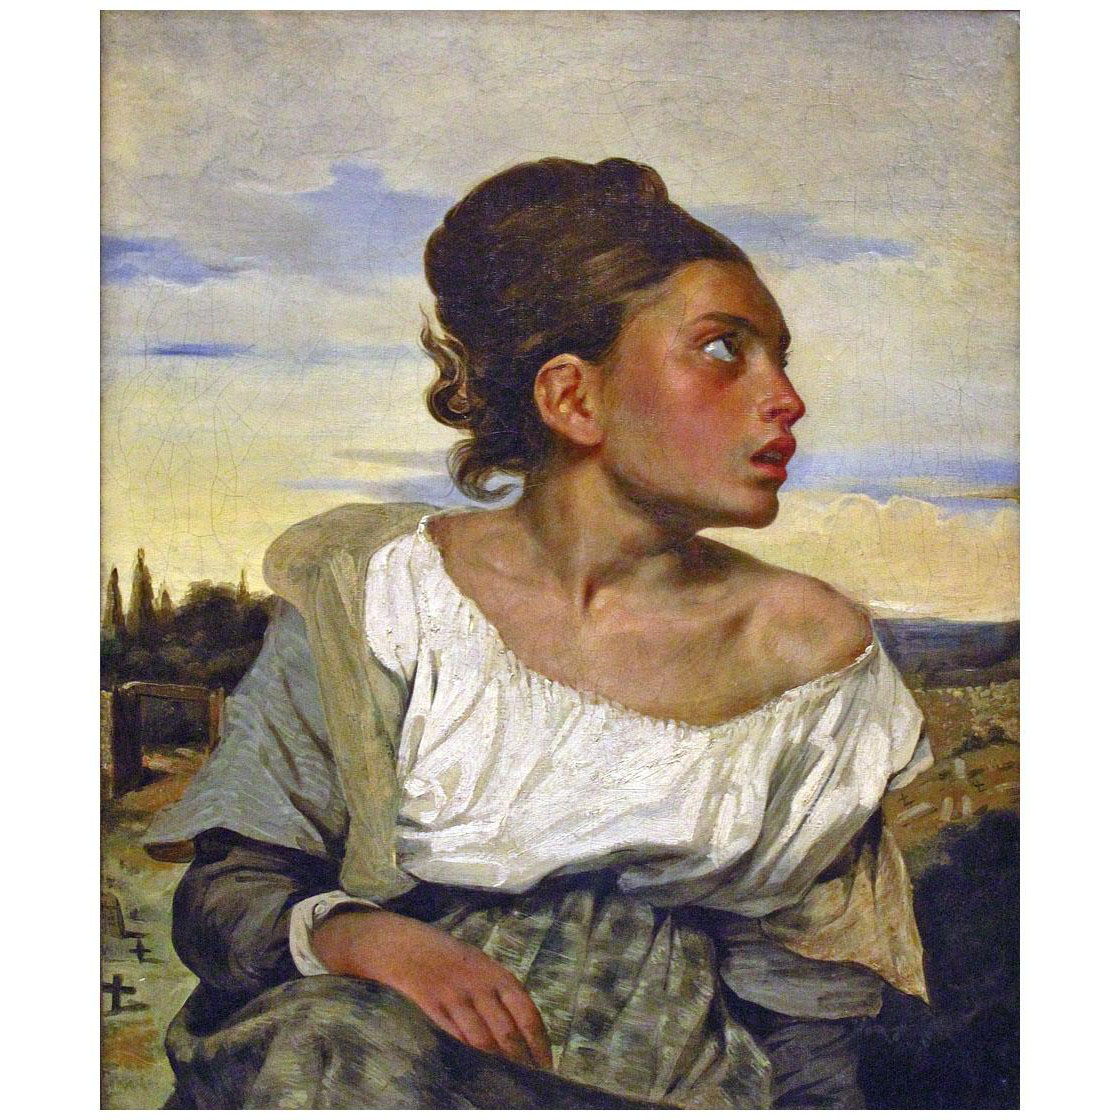 Eugene Delacroix. Jeune orpheline au cimetière. 1824. Louvre Paris